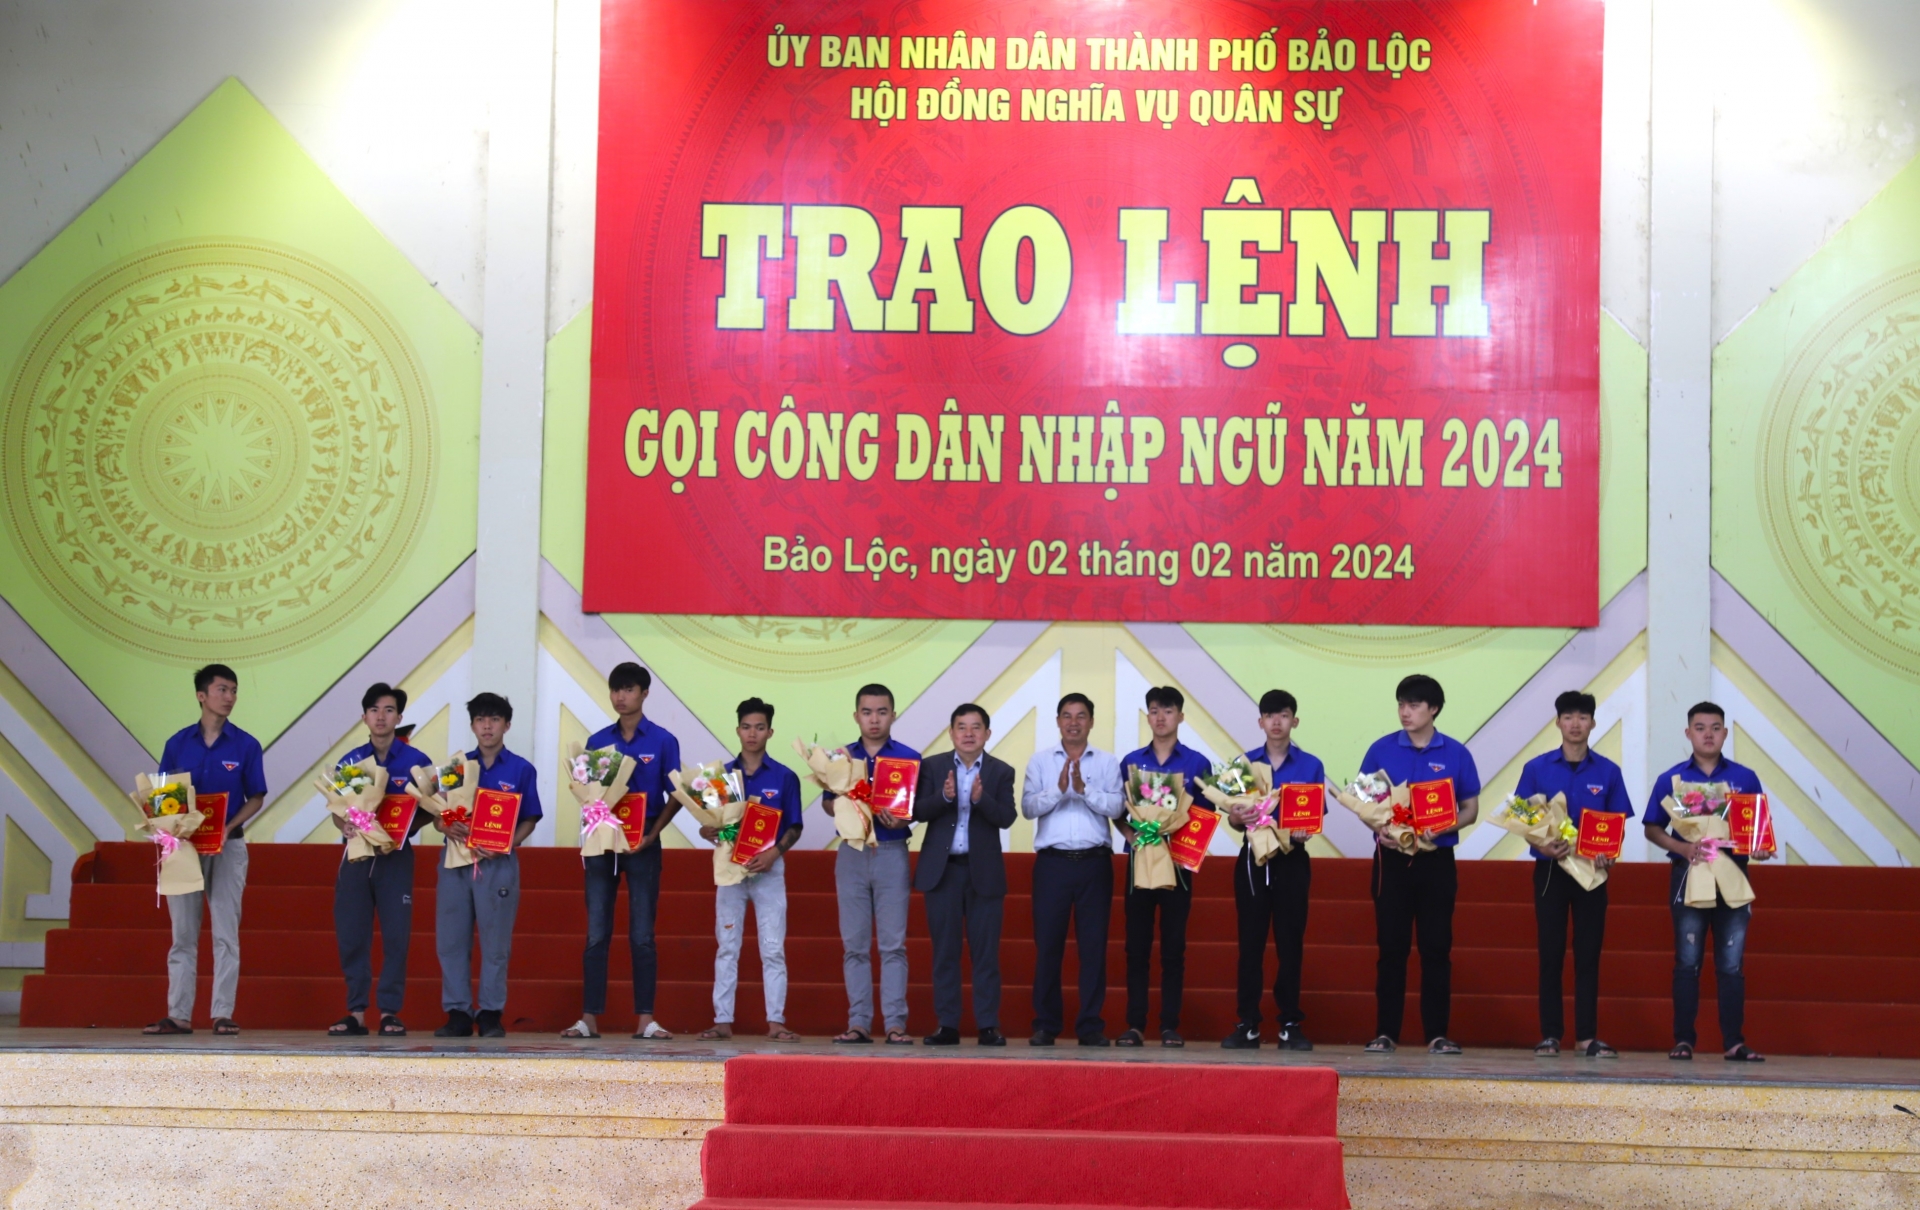 Bảo Lộc: Trao lệnh gọi công dân nhập ngũ cho 150 thanh niên